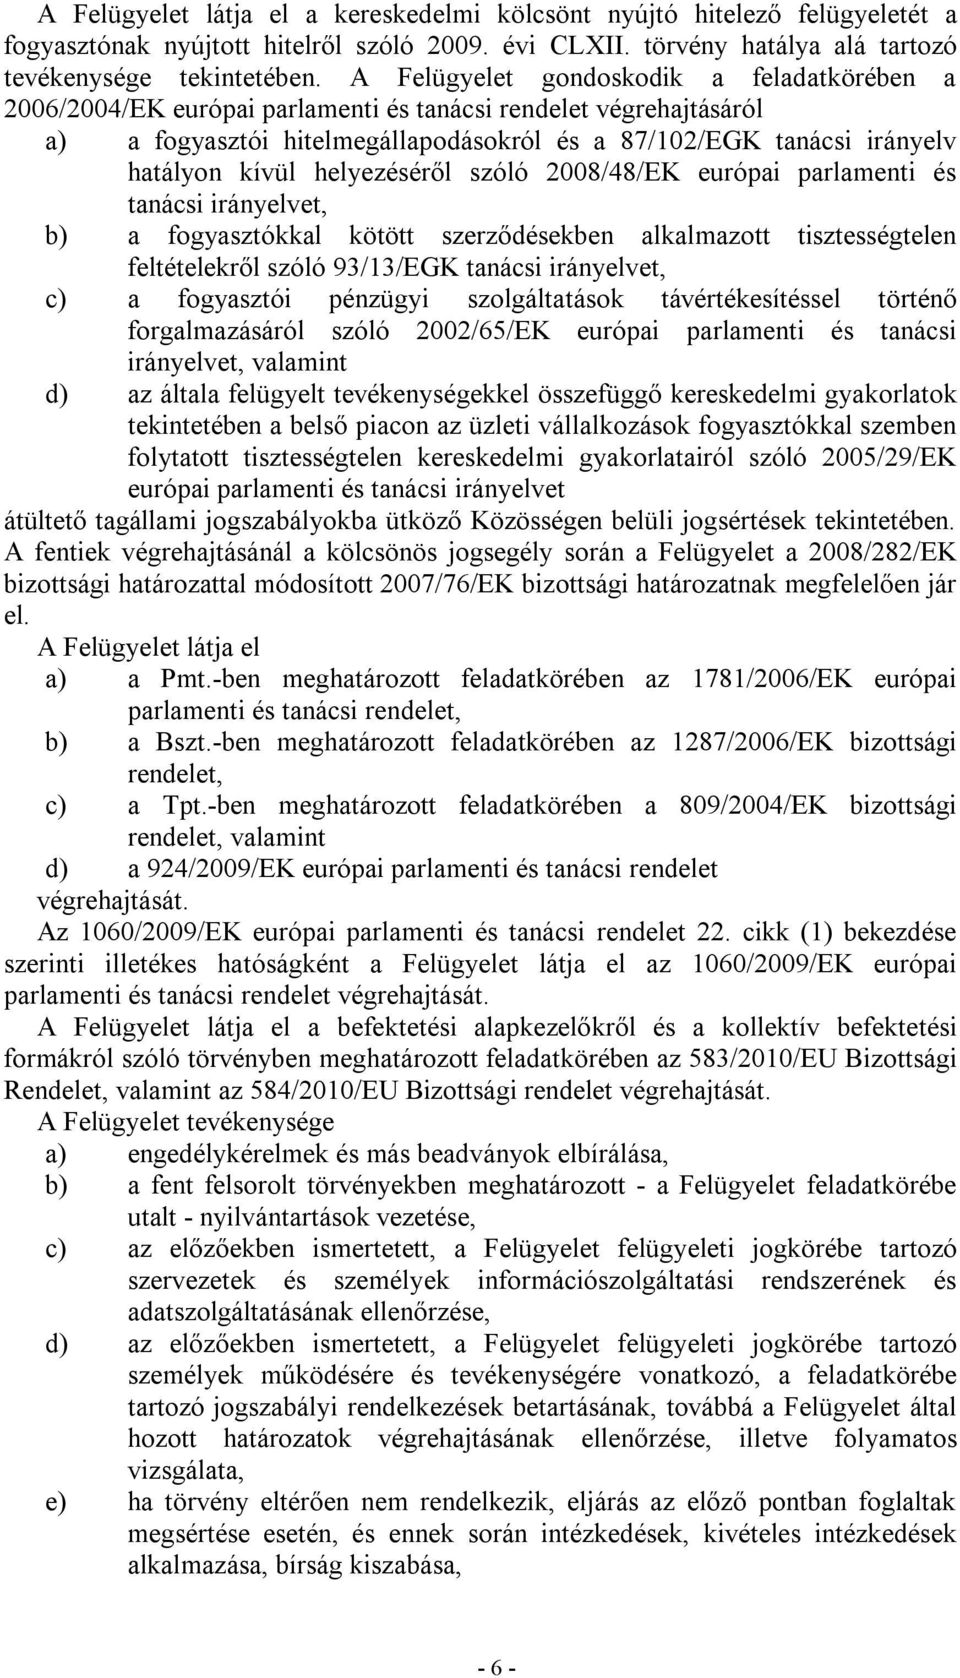 helyezéséről szóló 2008/48/EK európai parlamenti és tanácsi irányelvet, b) a fogyasztókkal kötött szerződésekben alkalmazott tisztességtelen feltételekről szóló 93/13/EGK tanácsi irányelvet, c) a